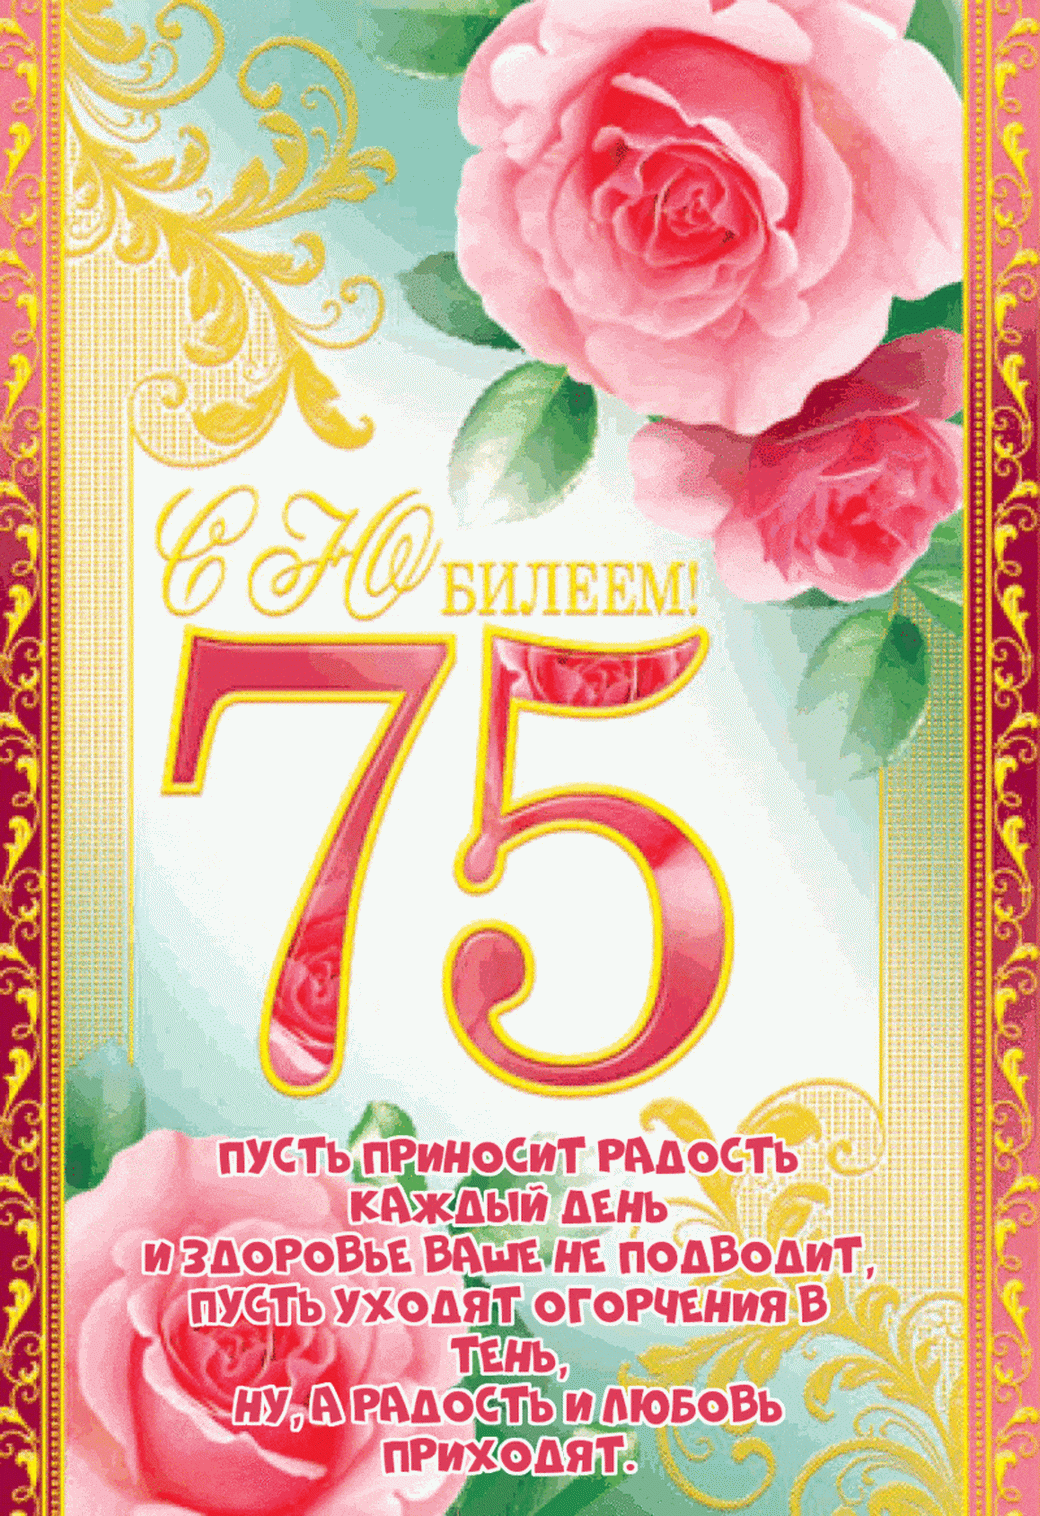 Открытка на юбилей 75 лет с красивыми цветочками